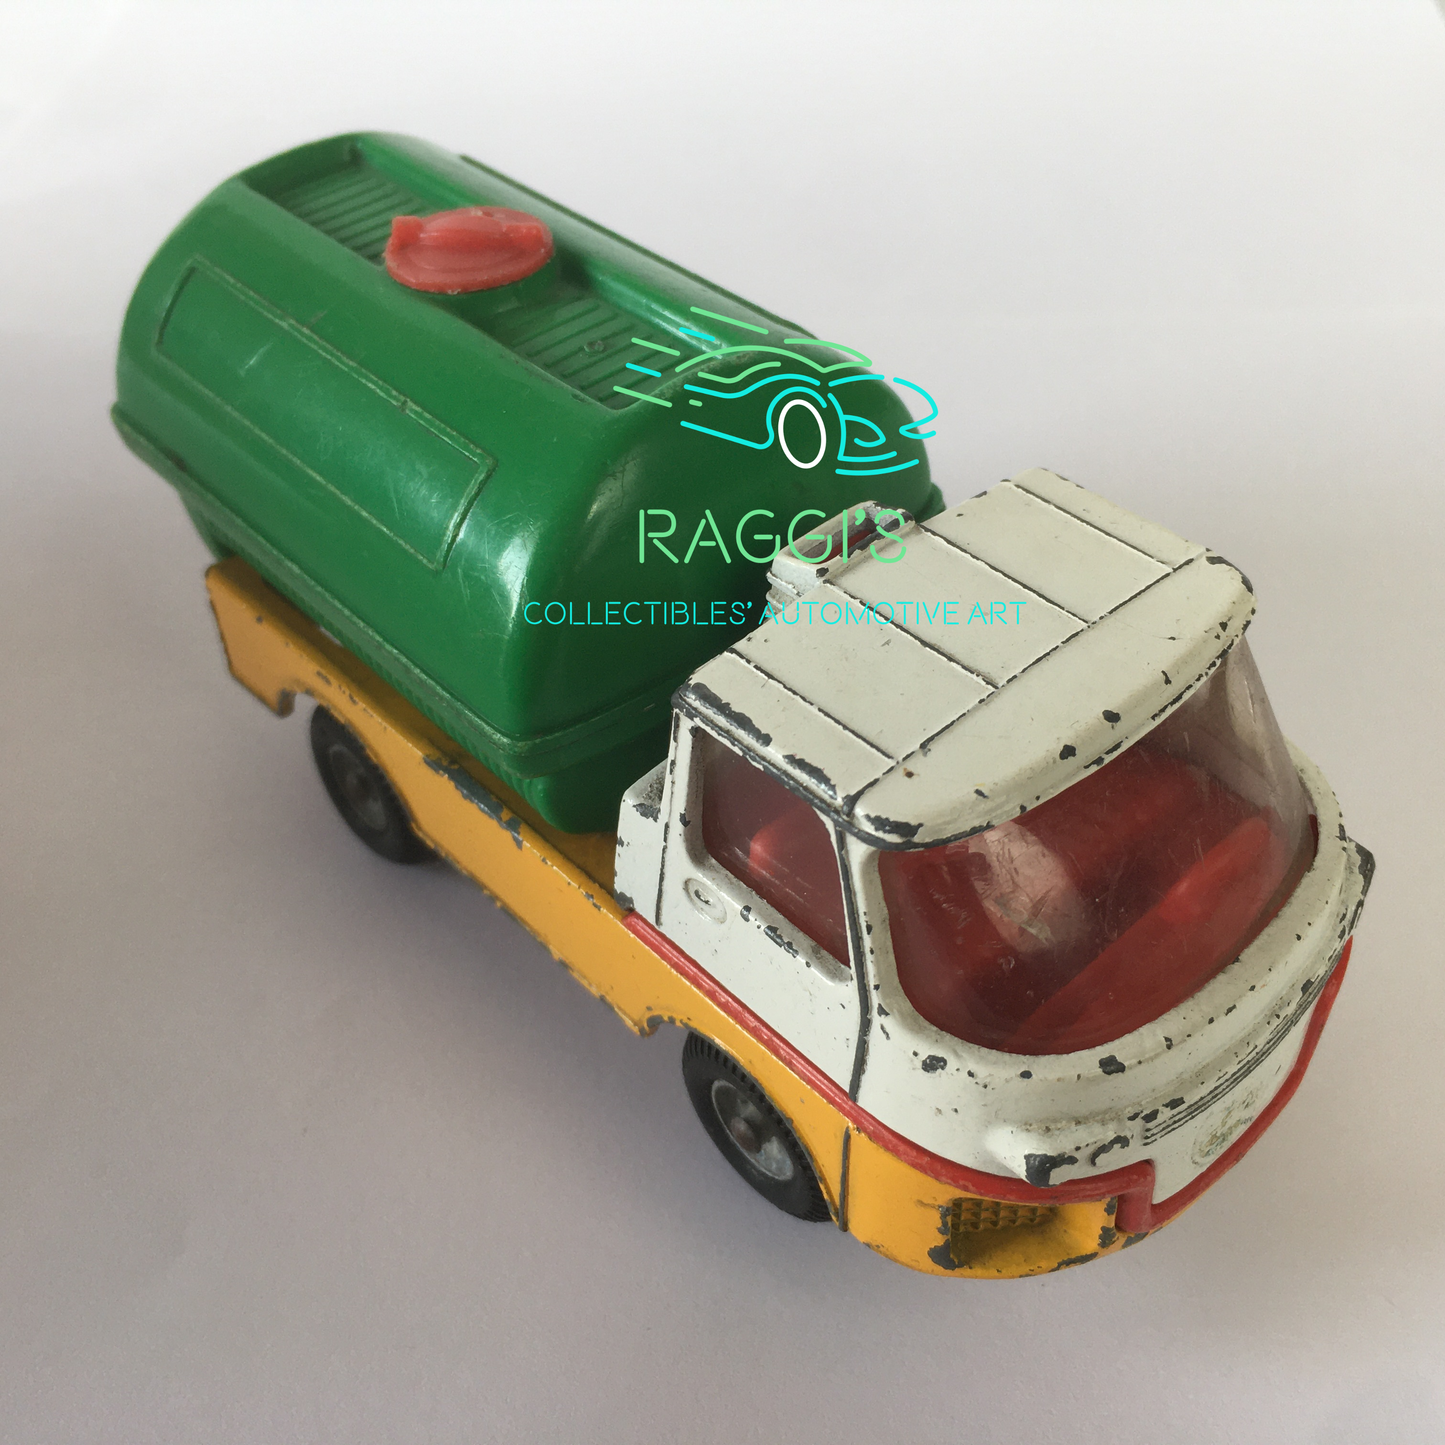 Turbine Truck, Modellino in metallo Pressofuso Quality Toys by Corgi Turbine Tank Truck Scala 1:43 - Raggi's Collectibles' Automotive Art